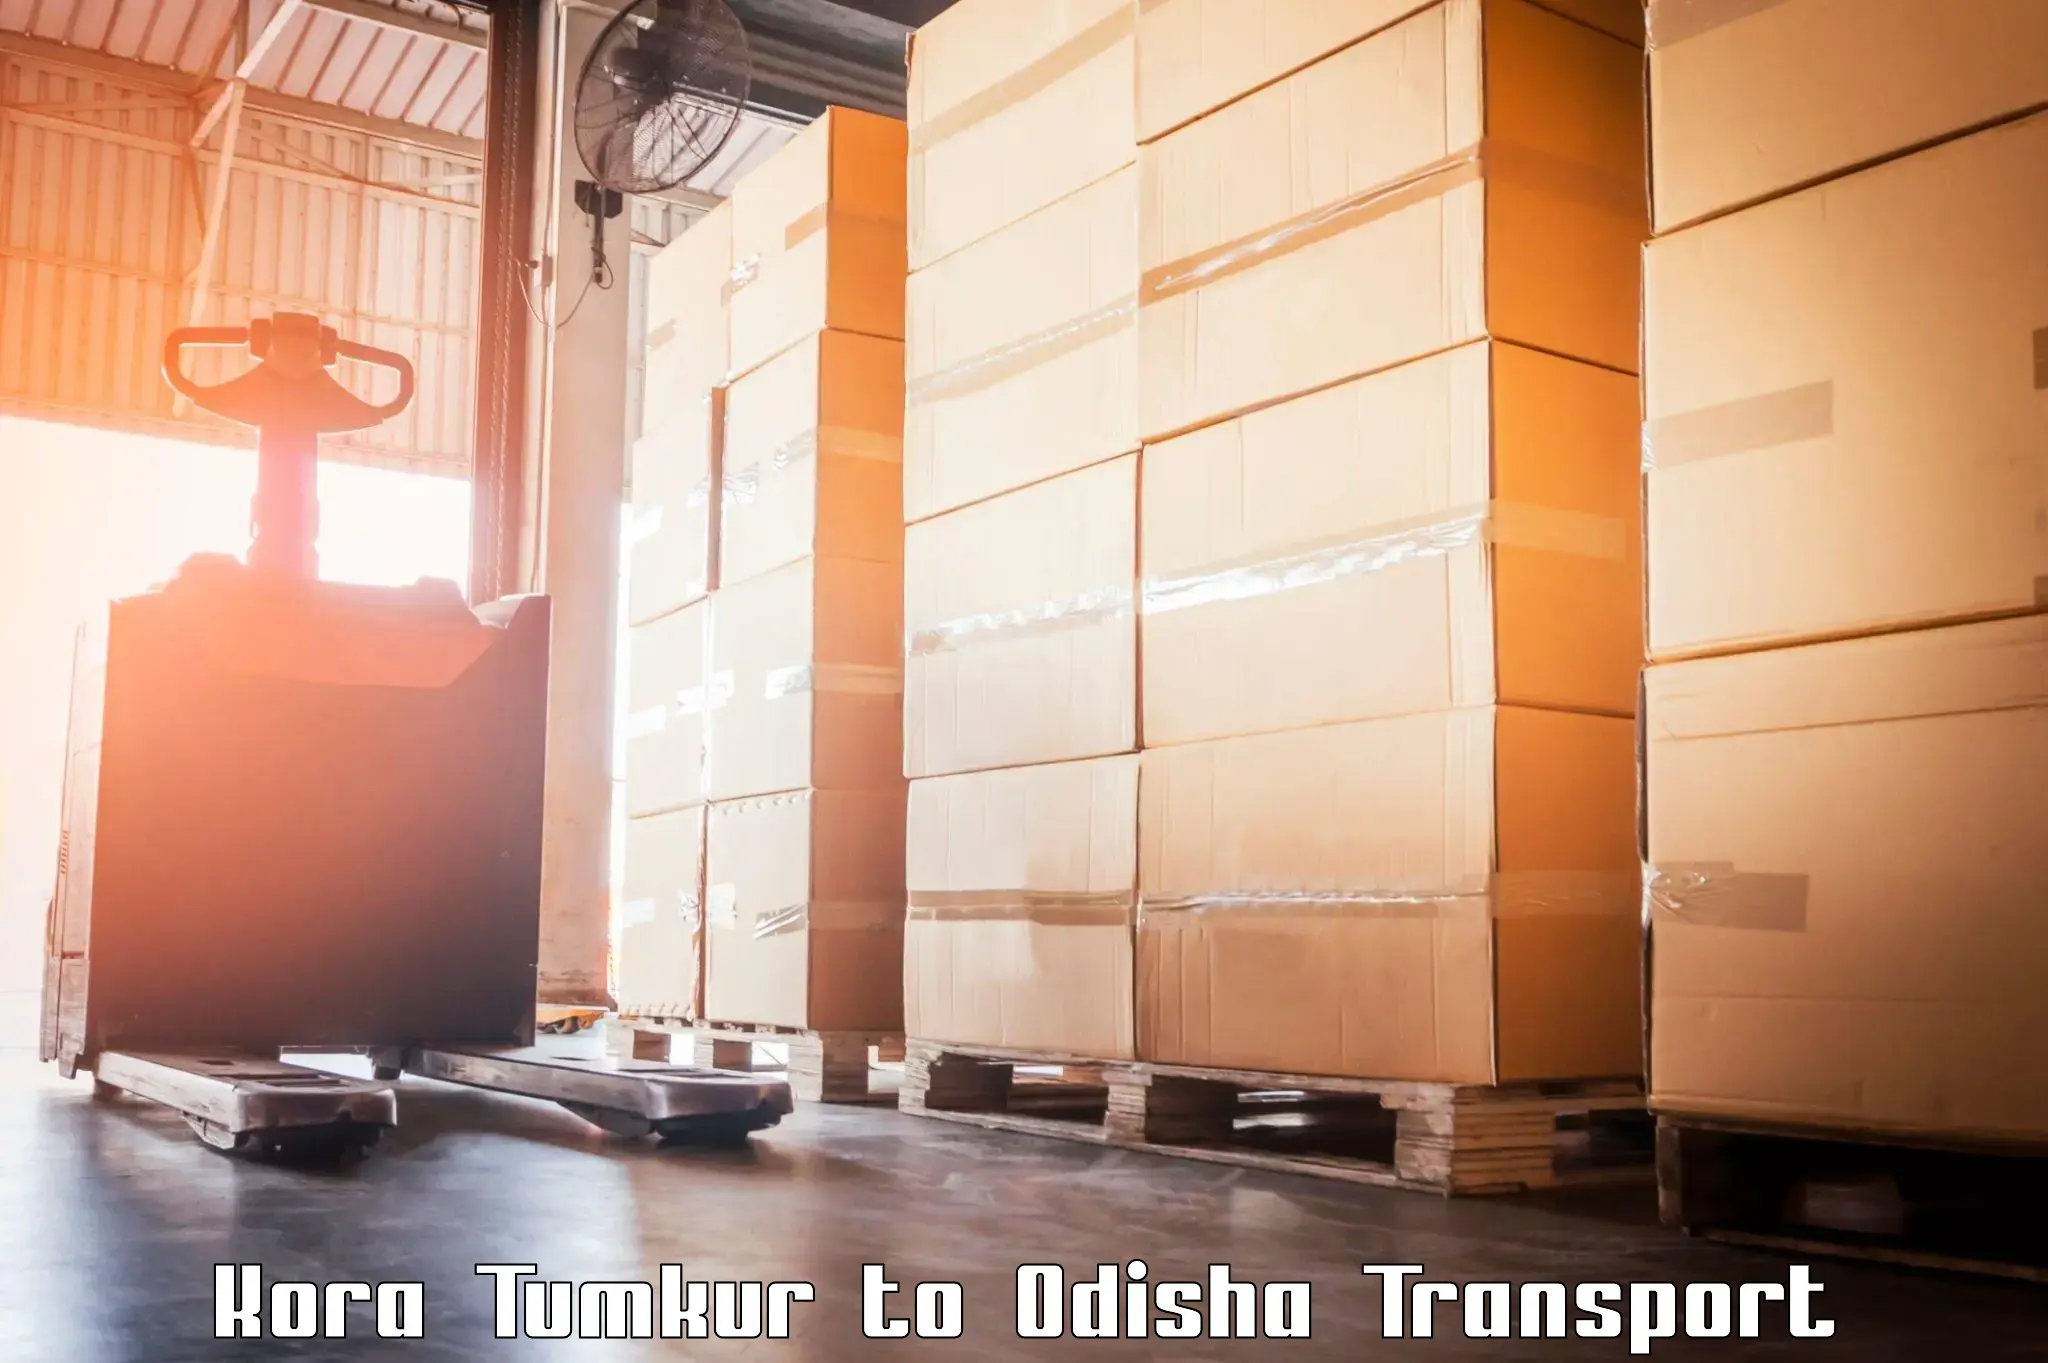 Furniture transport service in Kora Tumkur to Badamba